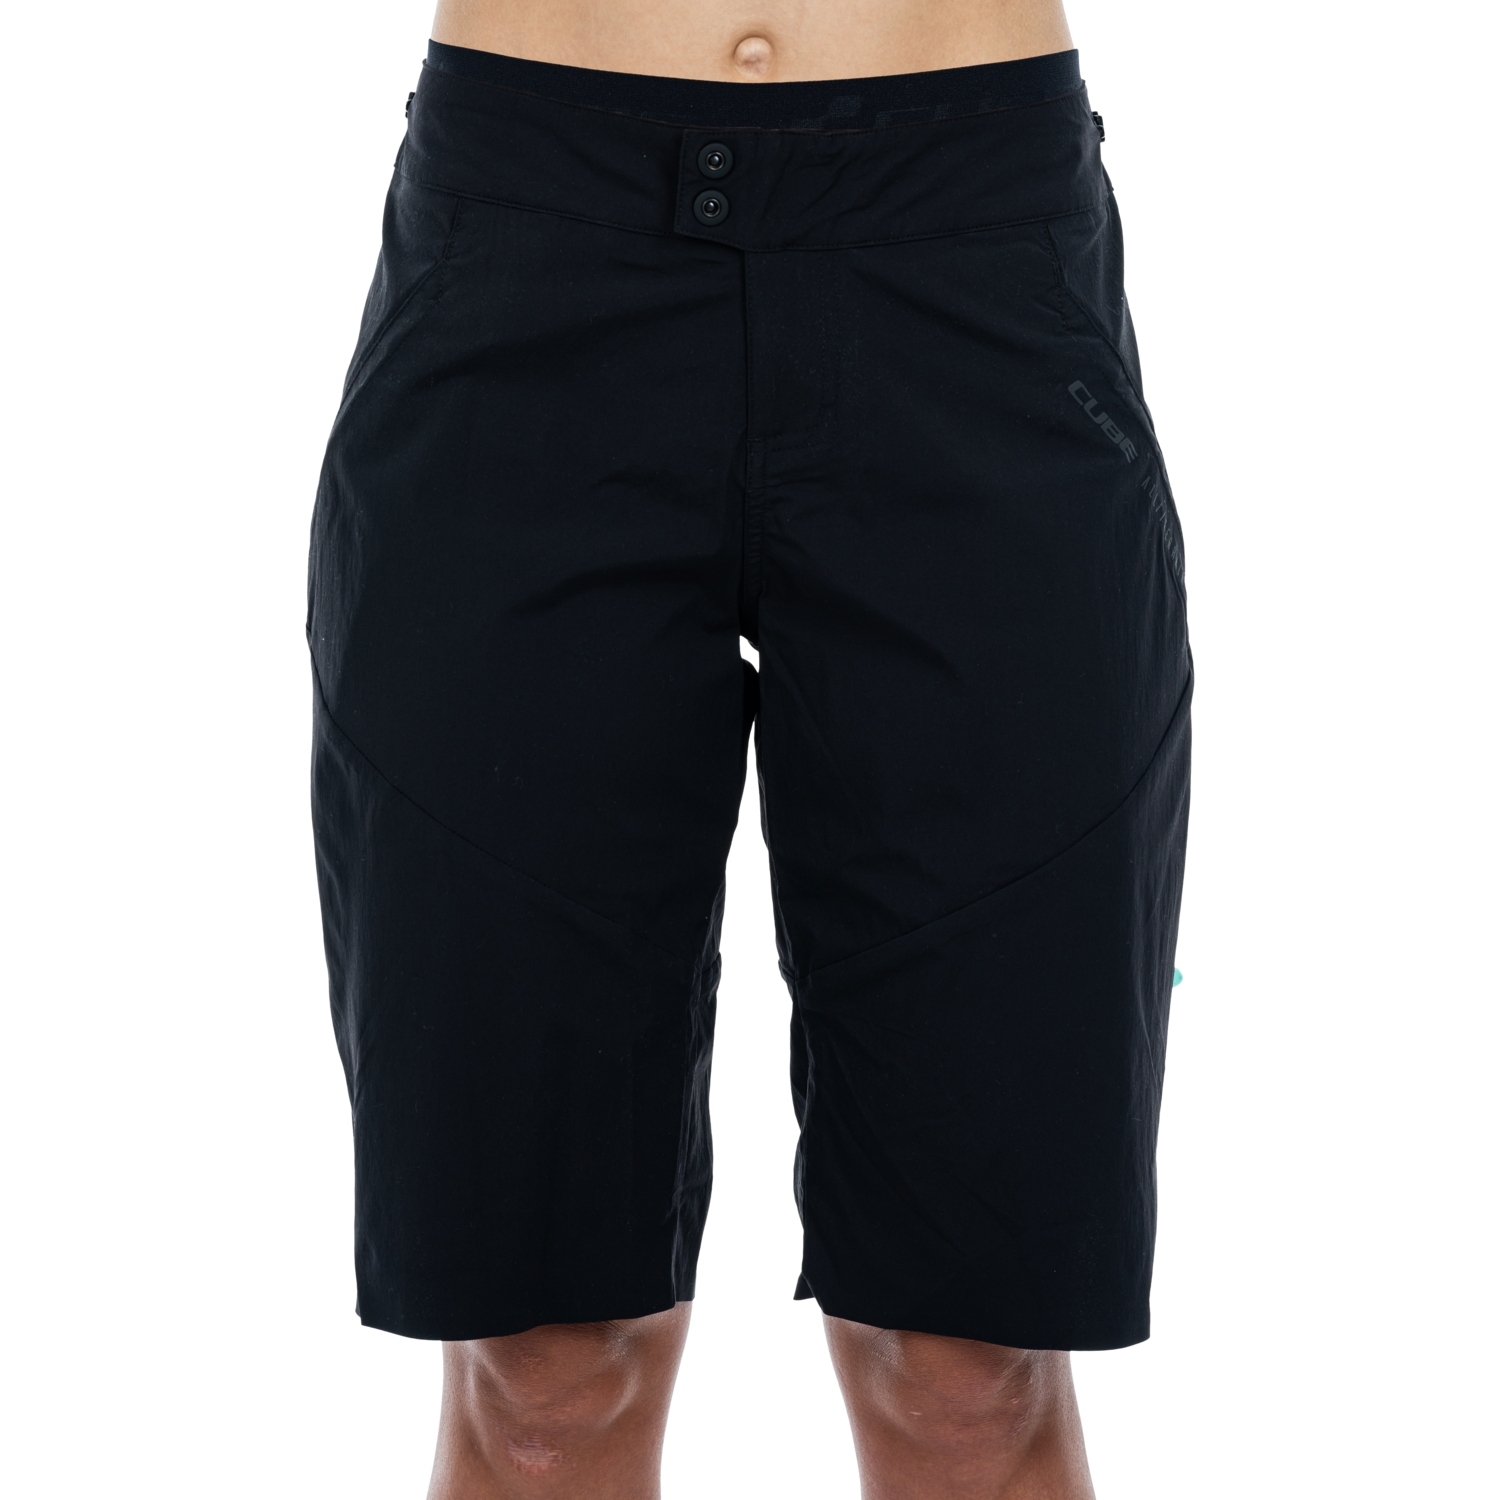 Produktbild von CUBE ATX Baggy Shorts inkl. Innenhose Damen - schwarz